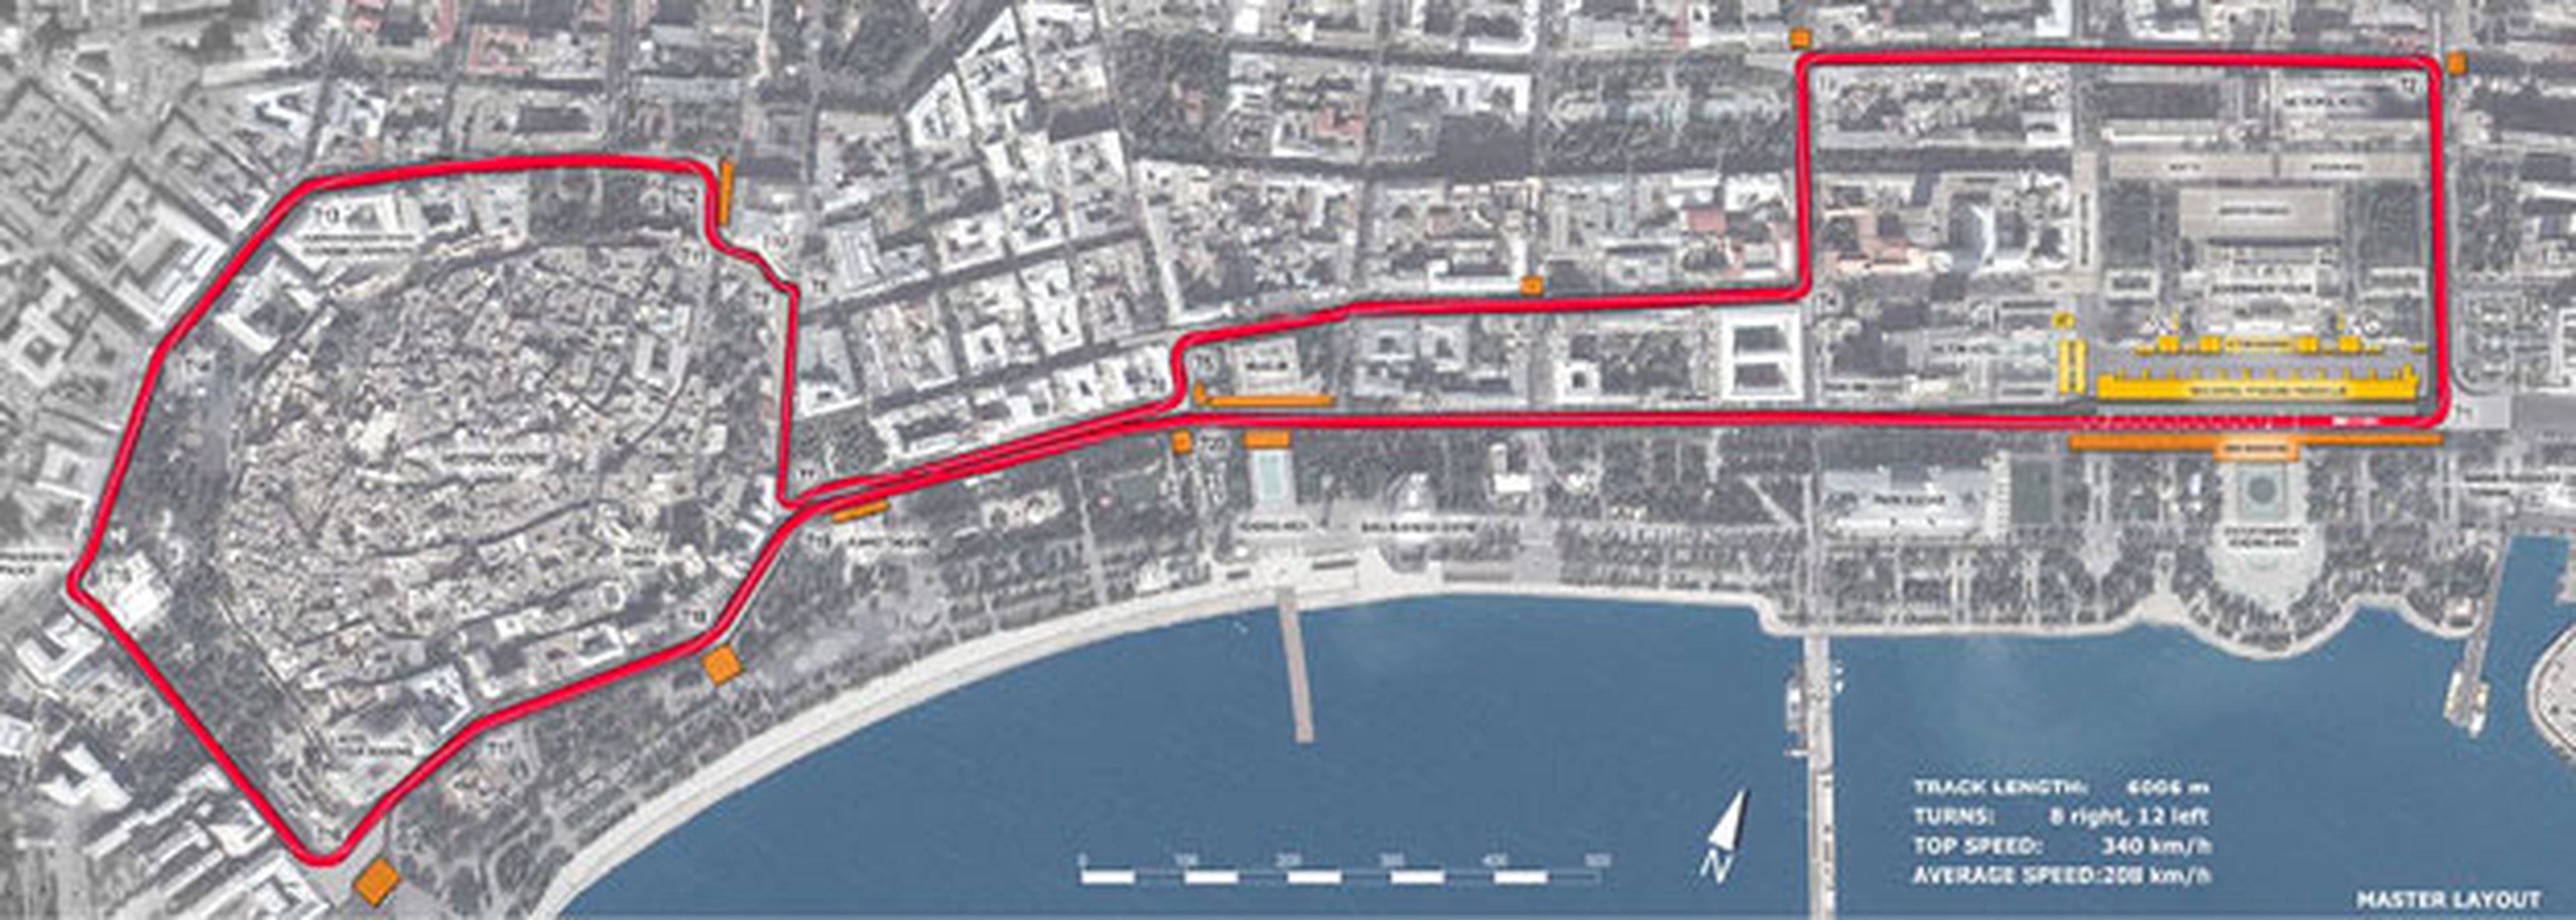 Circuito urbano de Baku